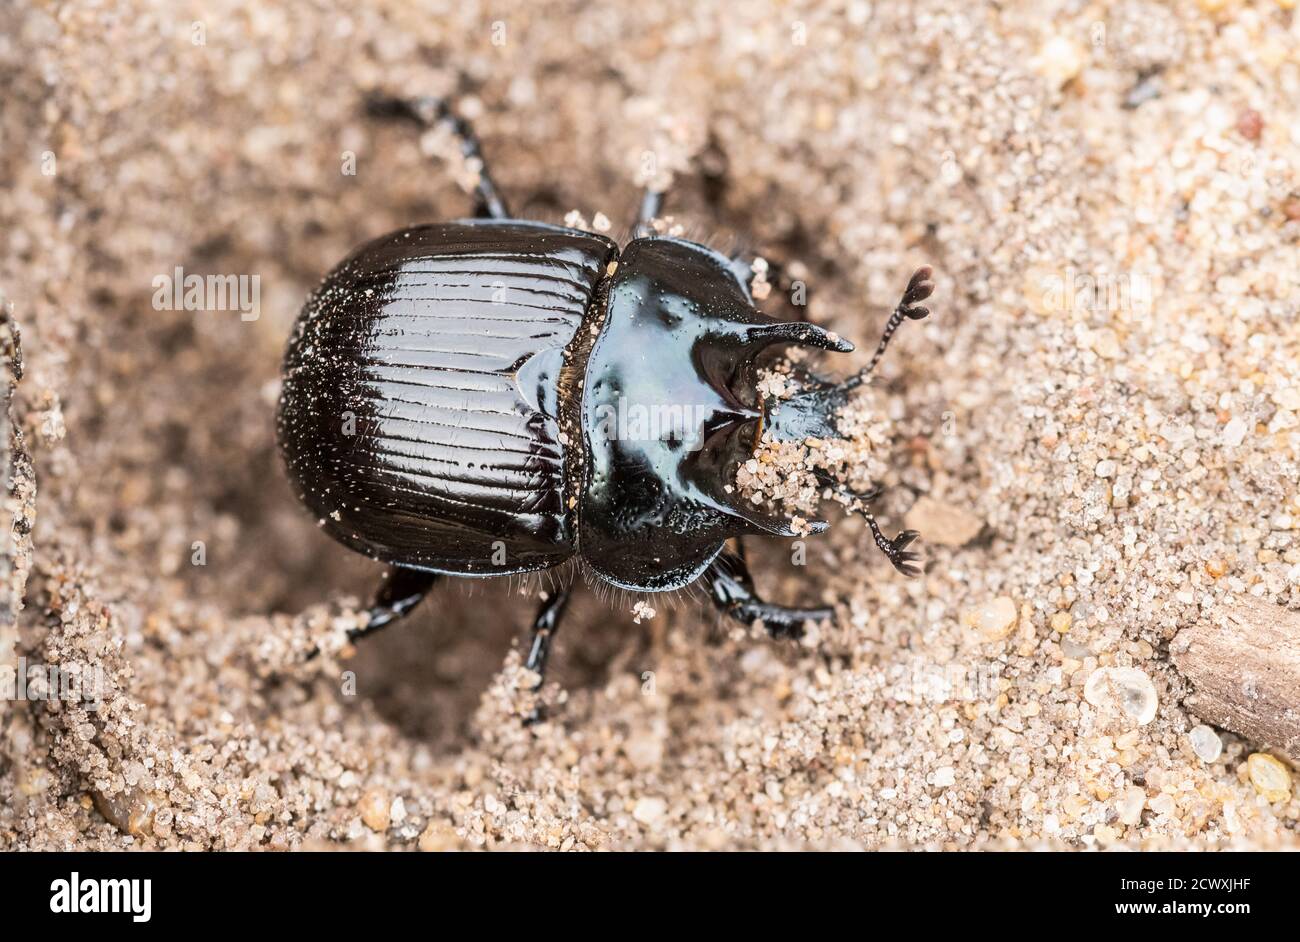 El escarabajo de Minotaur (Typhaeus typhoeus), un escarabajo de estiércol, en la tierra de la arena, Reino Unido Foto de stock